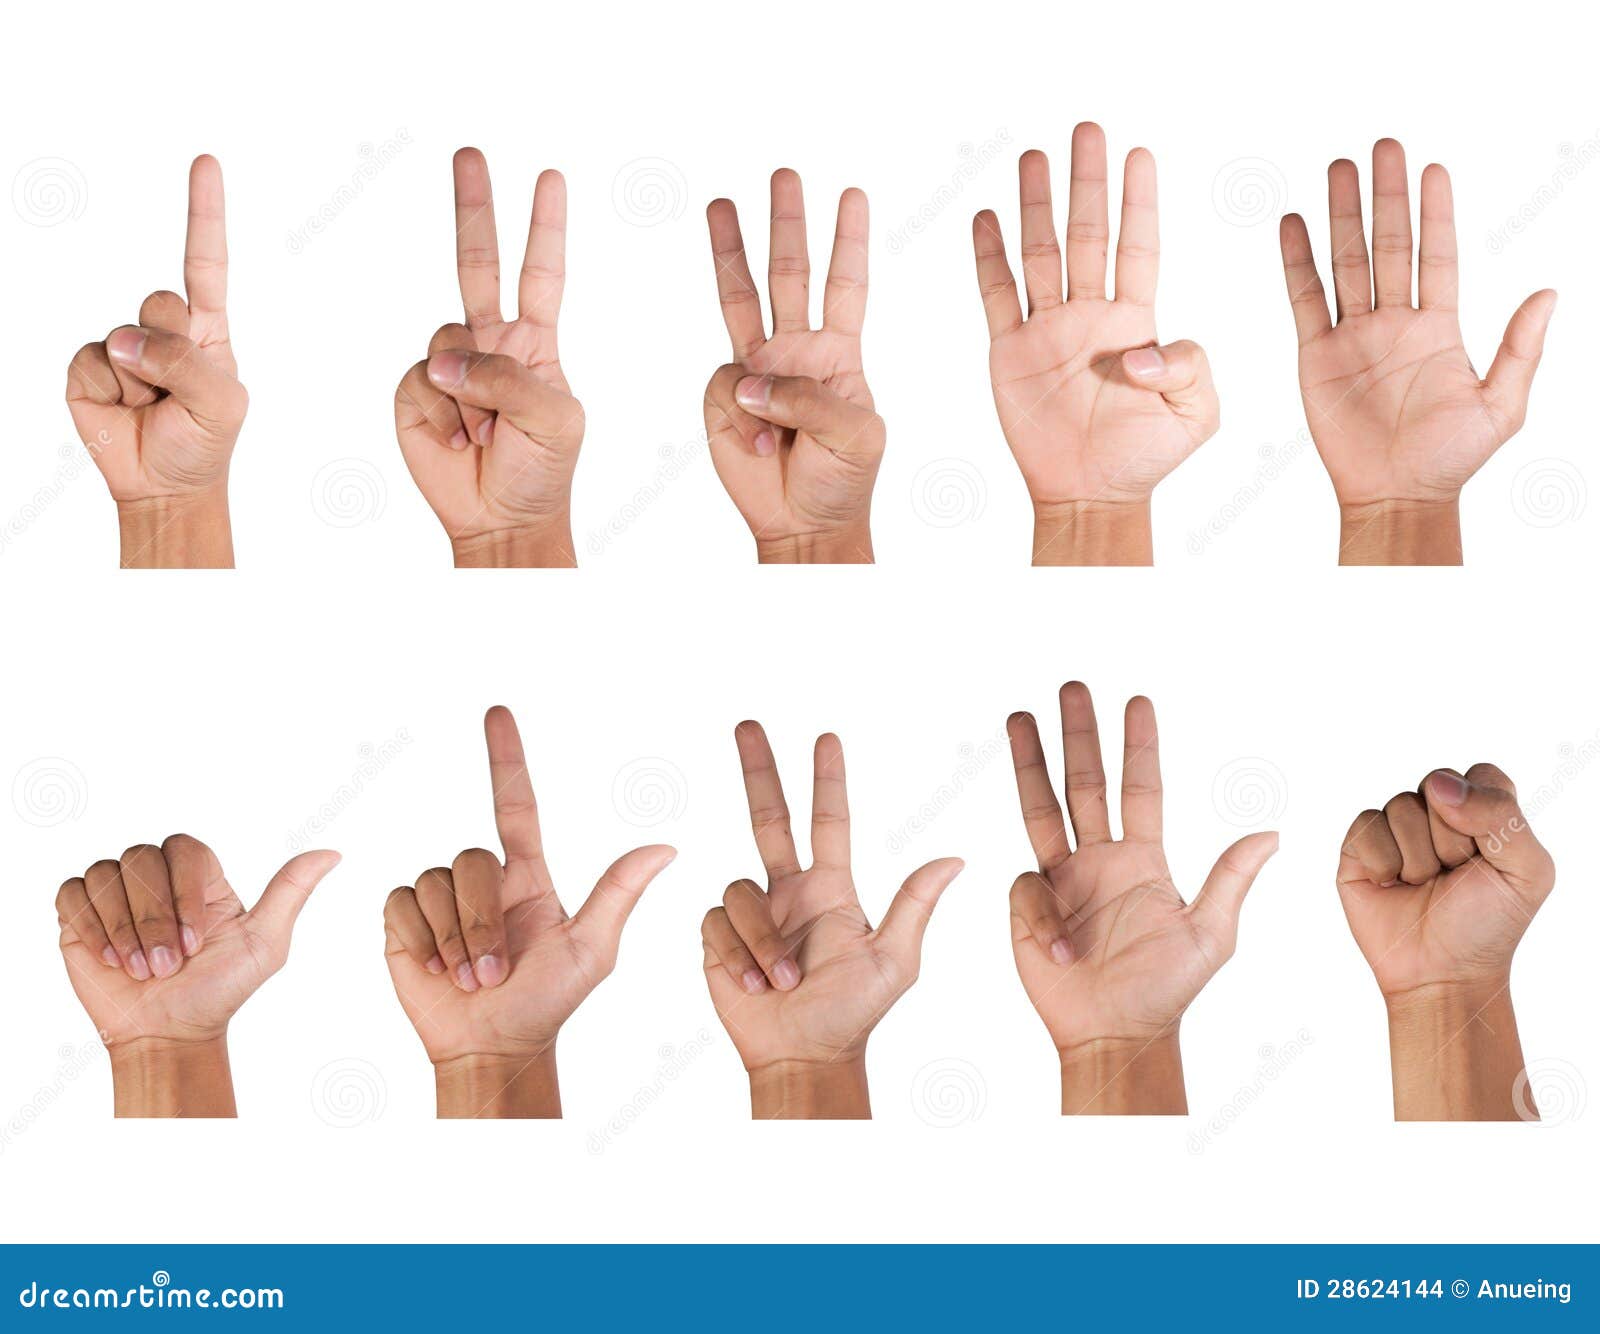 Игры есть на пальцах. Счет на пальцах. Жест счет на пальцах. Цифры на пальцах для детей.